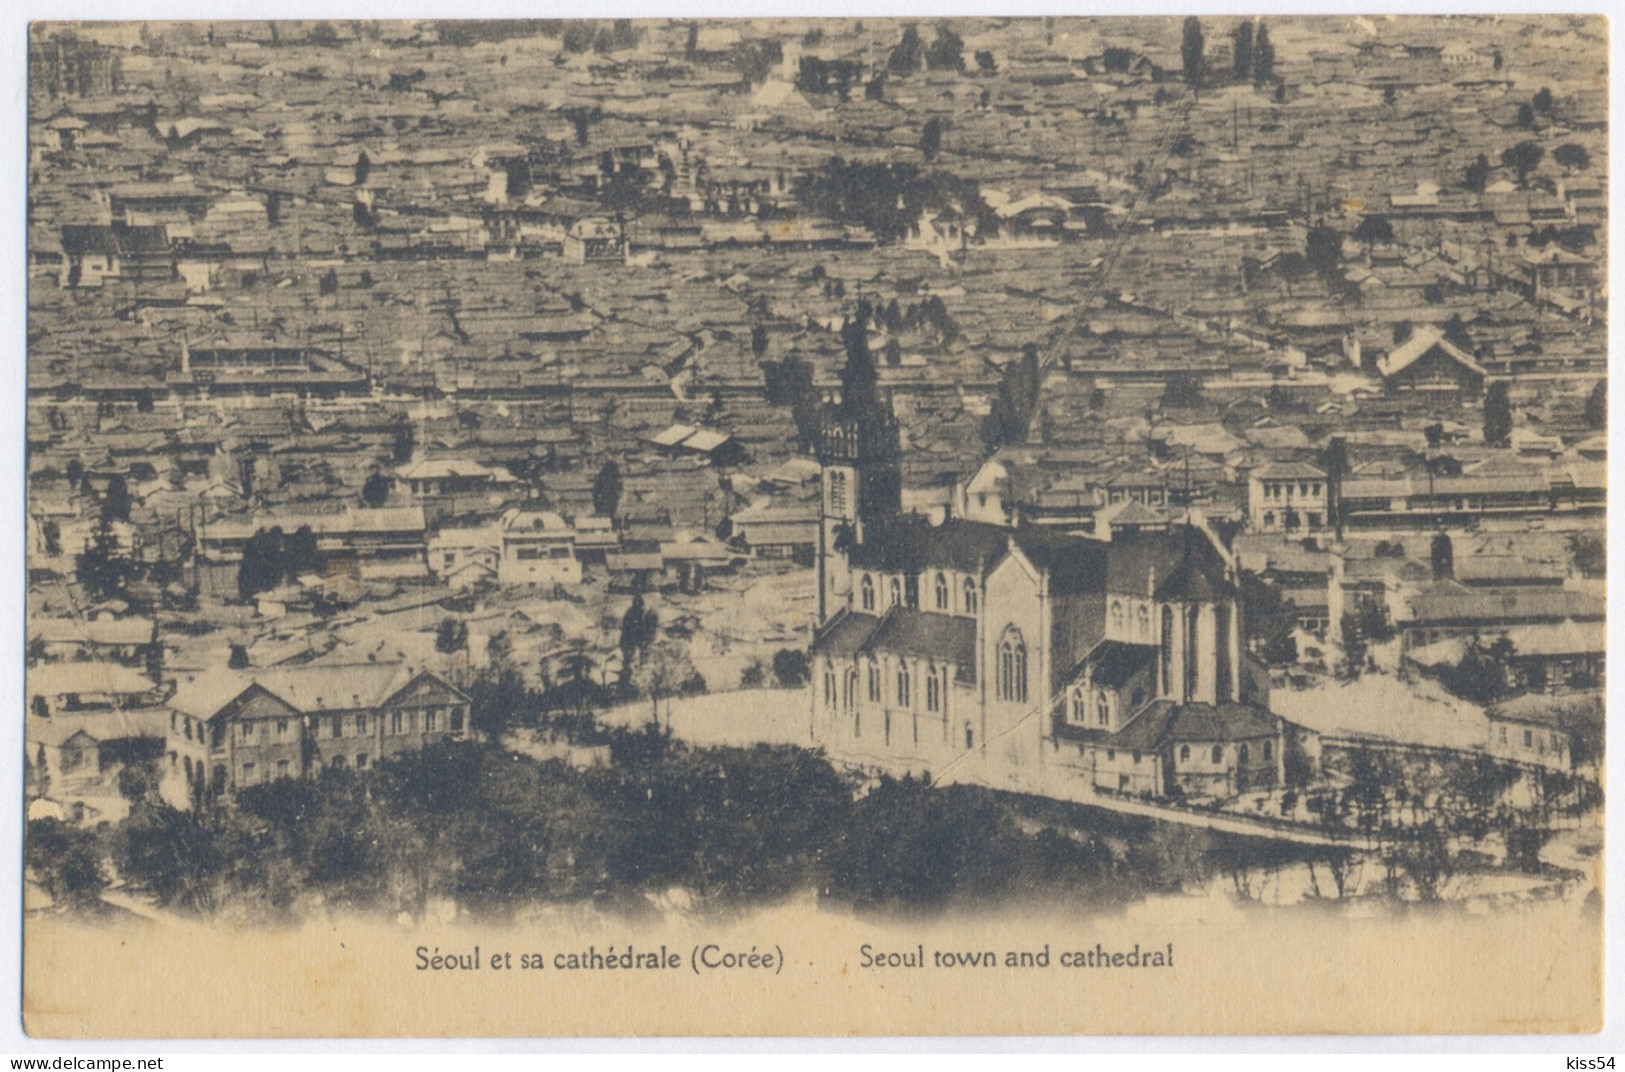 KOR 3 - 10337 SEOUL, Korea, Cathedral - Old Postcard - Unused - Korea (Süd)